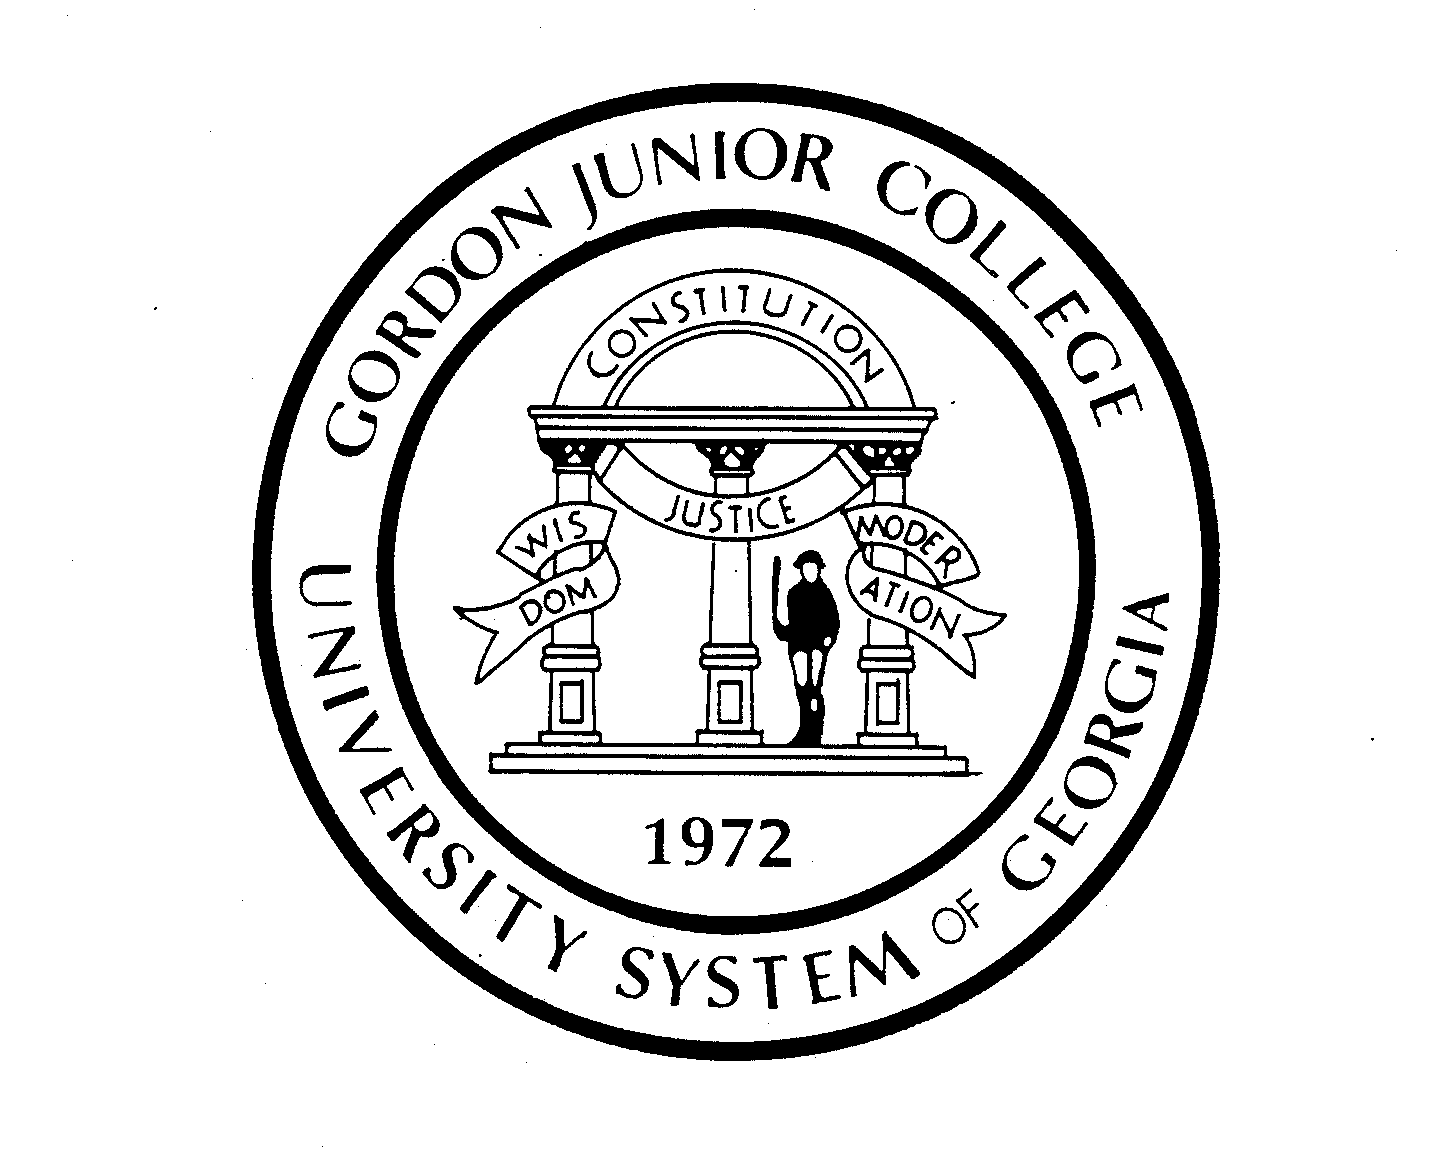  GORDON JUNIOR COLLEGE UNIVERSITY SYSTEM OF GEORGIA 1972